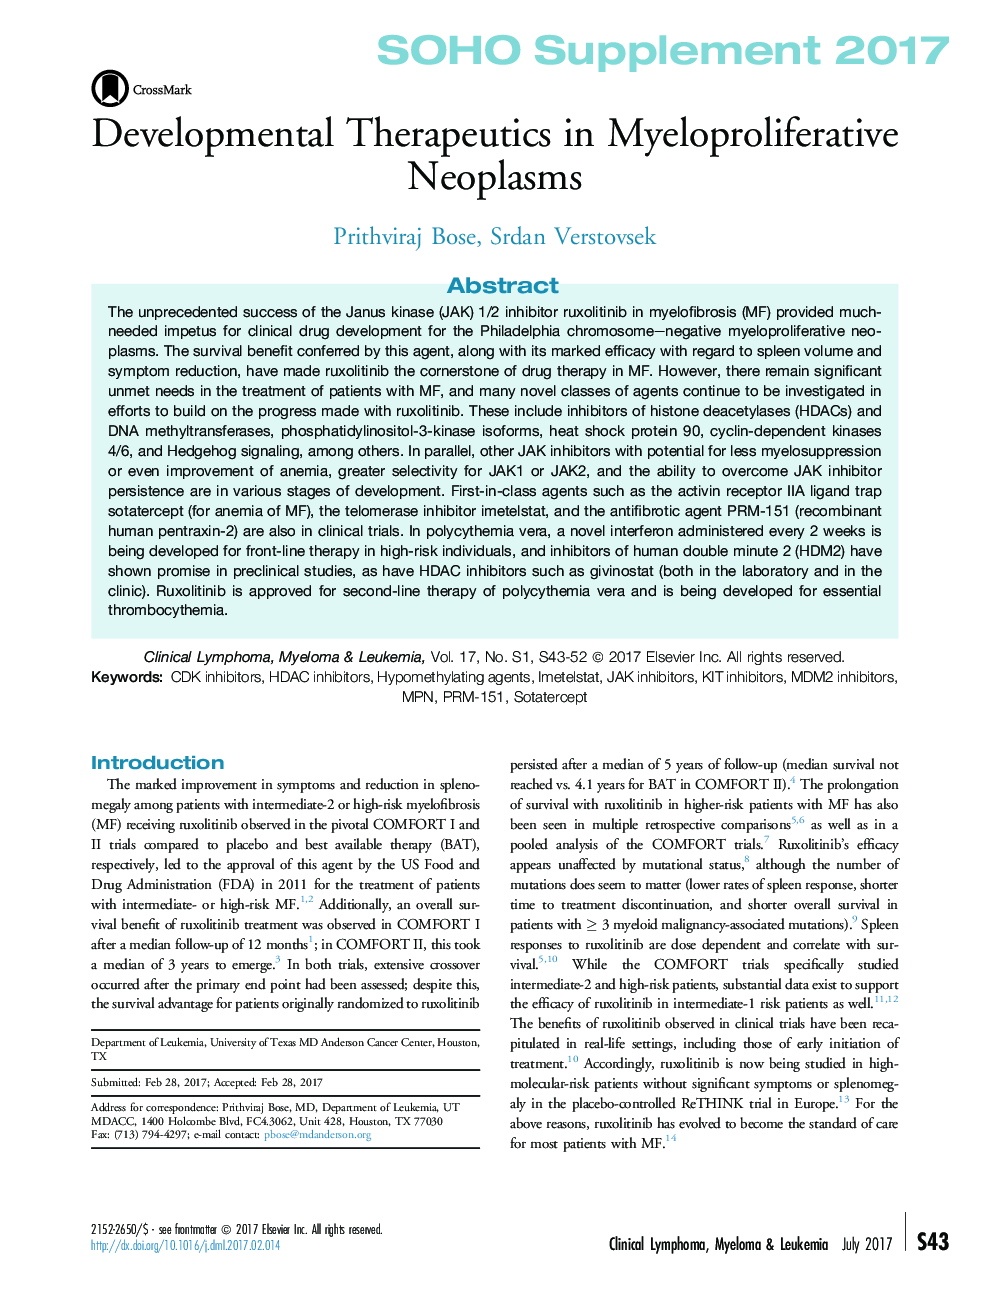 درمان های درمانی در نئوپلاسم های میلوپرولیفراتیو 